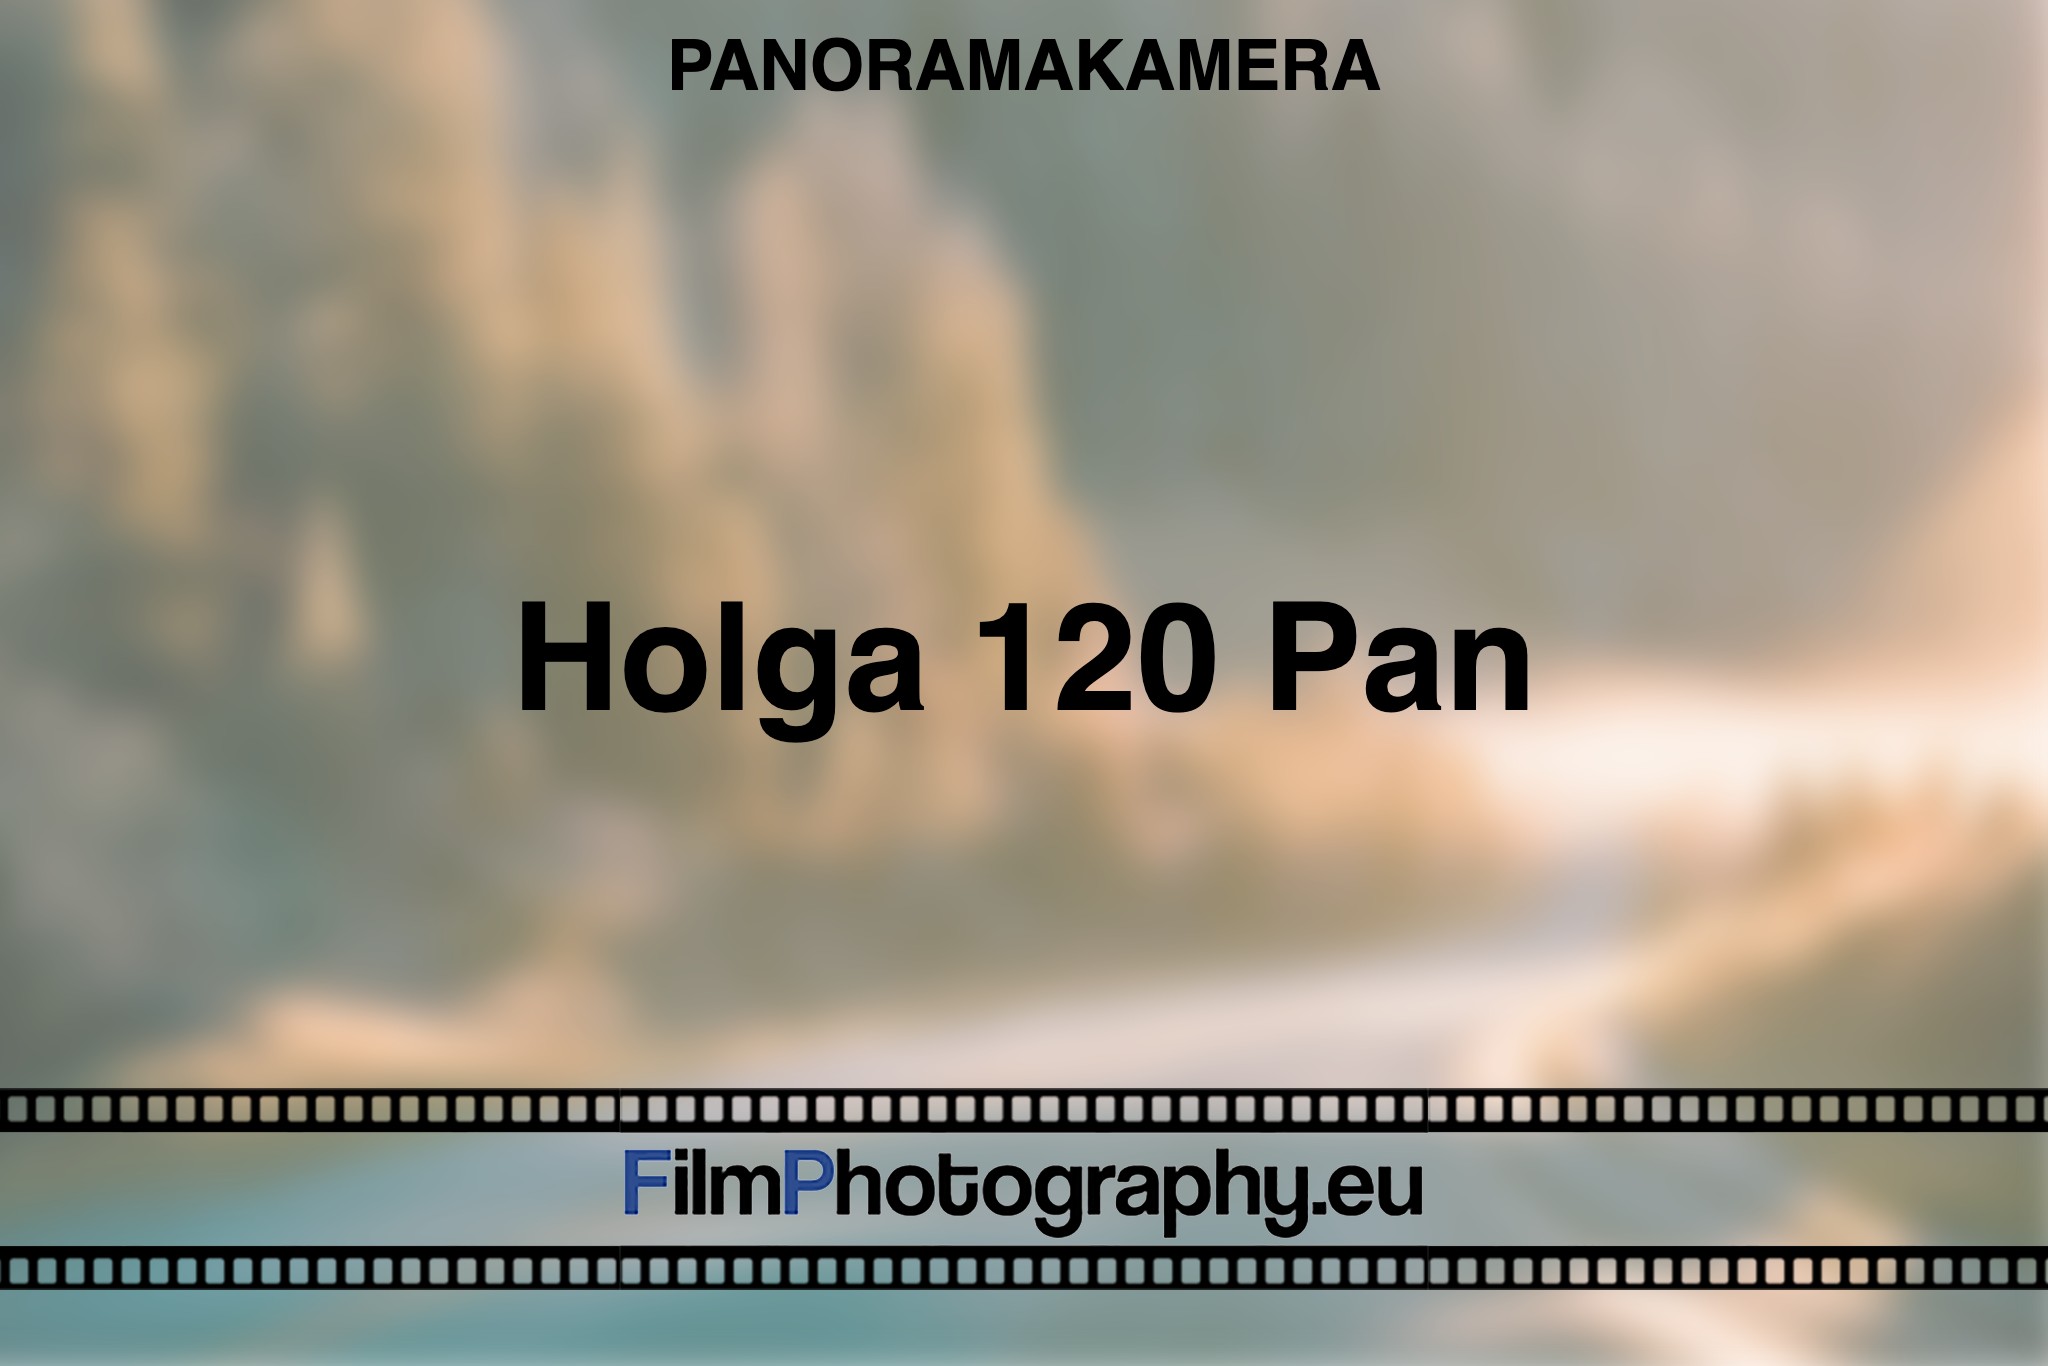 holga-120-pan-panoramakamera-bnv